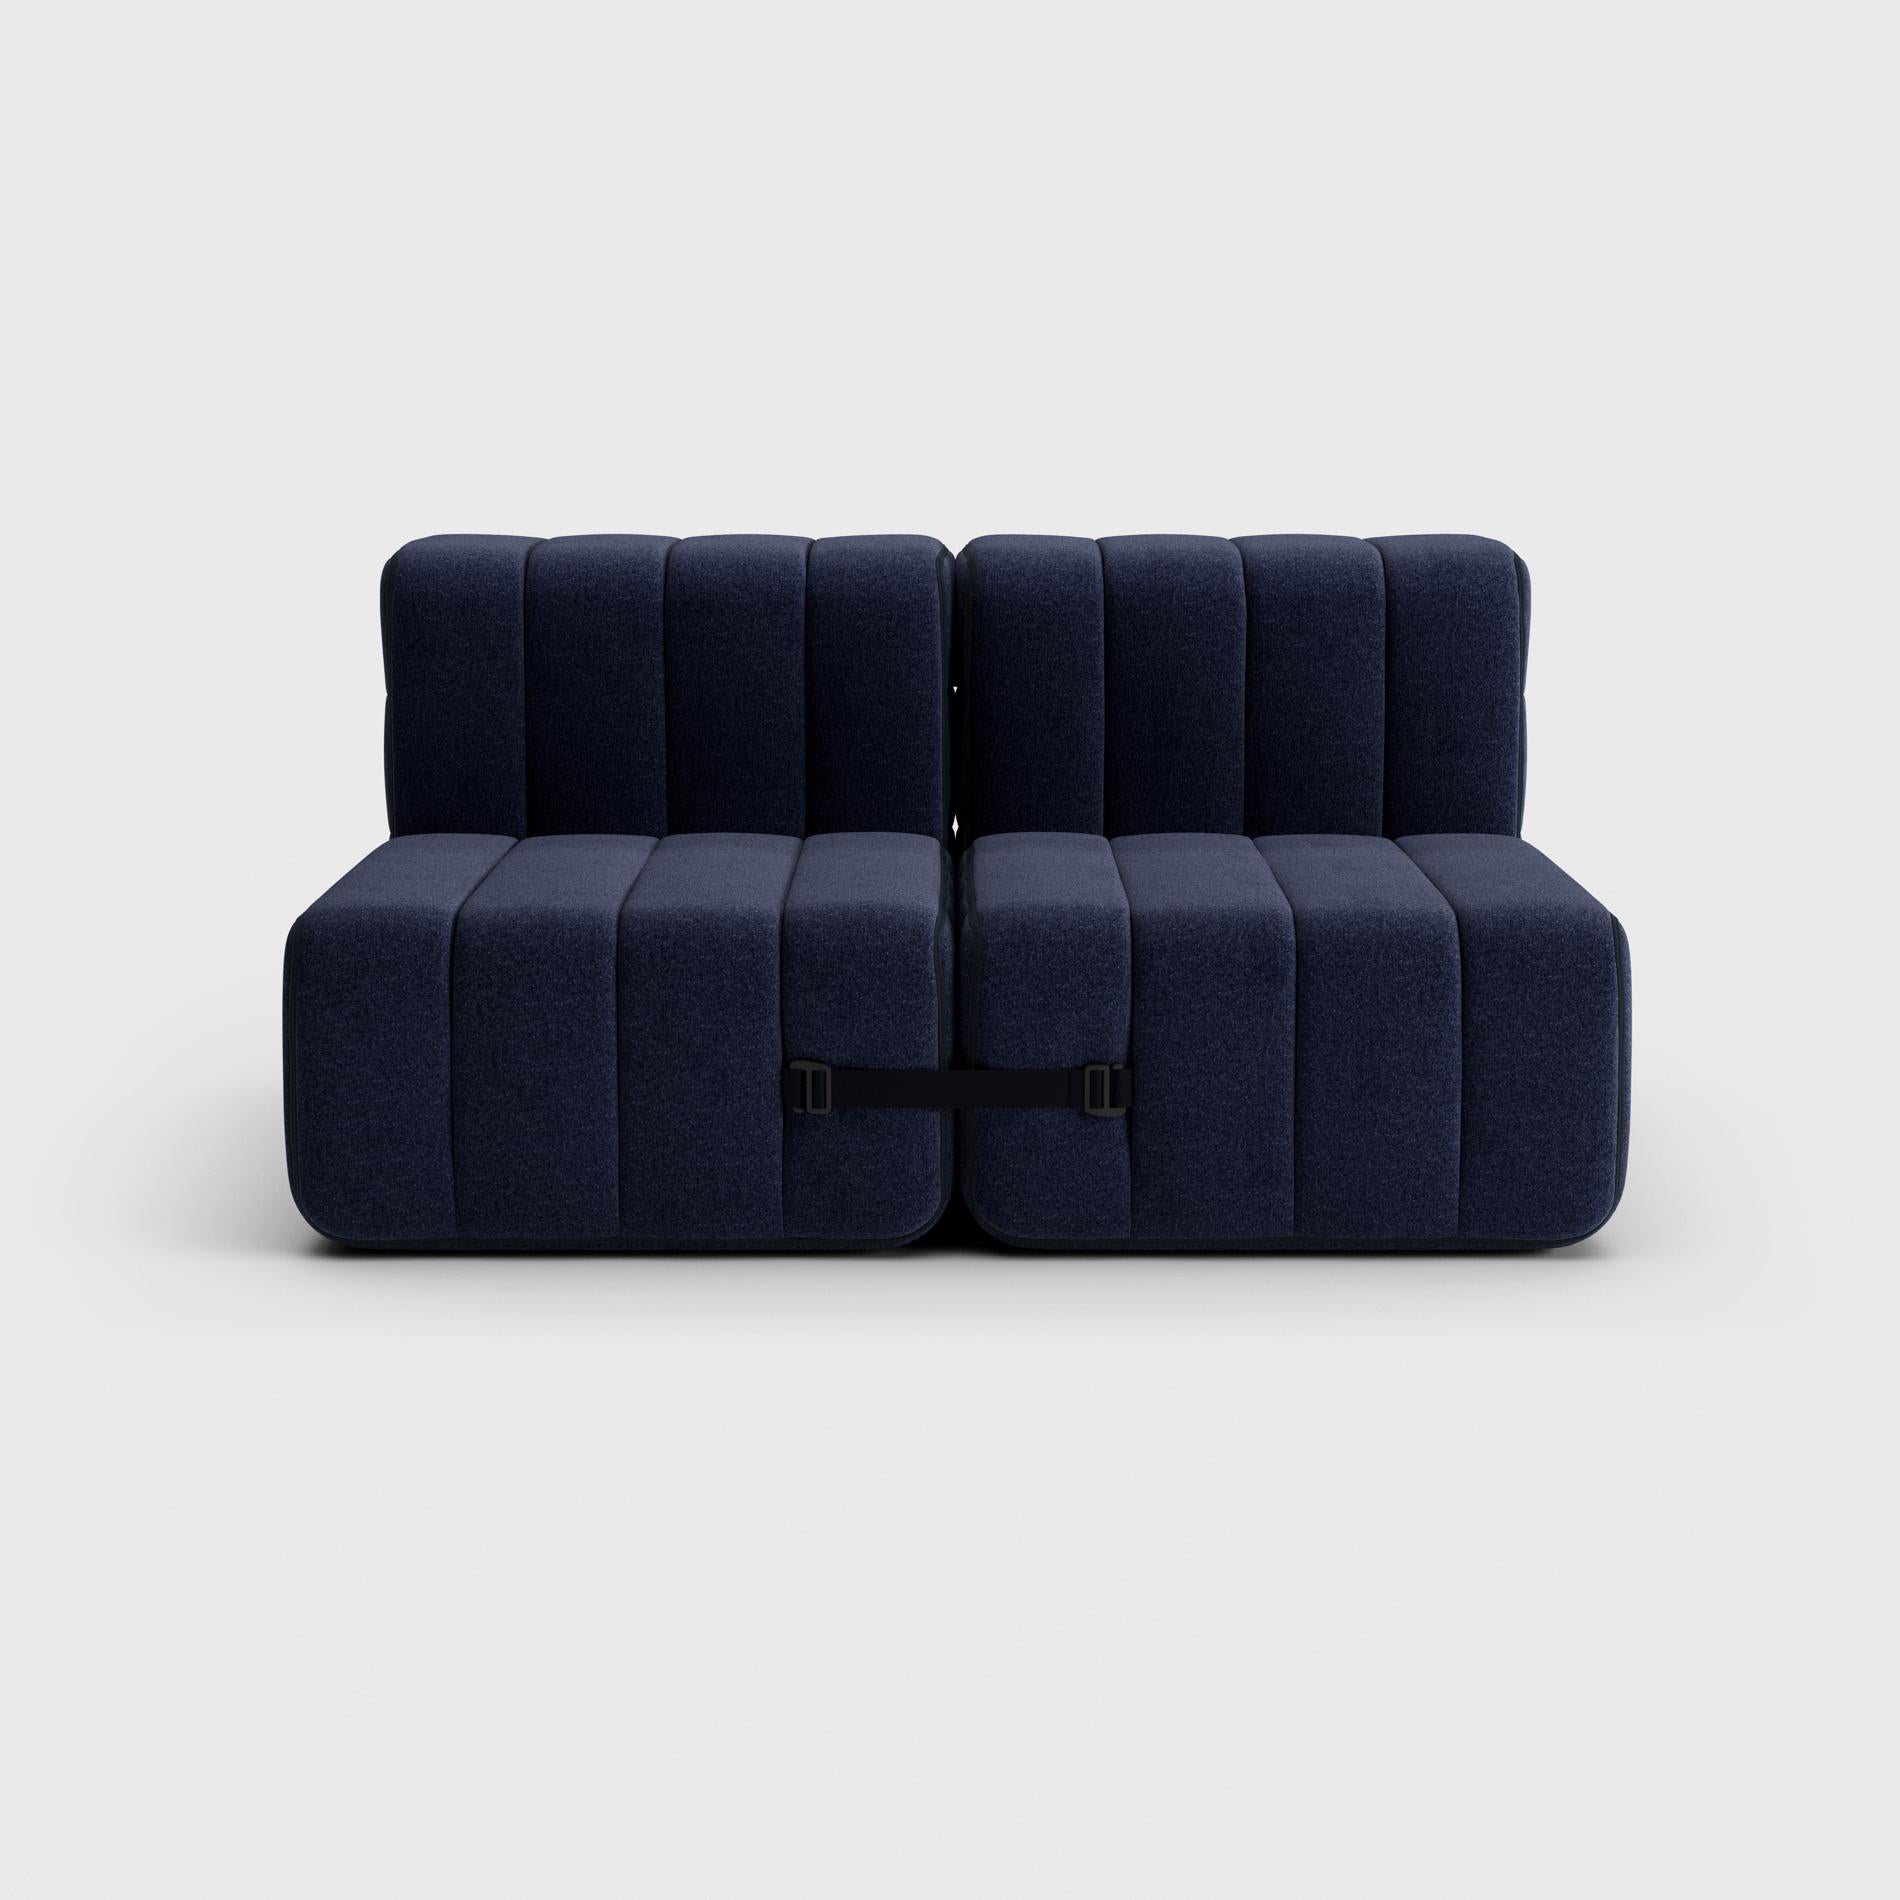 Modern Curt Single Module, Fabric Dama '0048 Dark Blue', Curt Modular Sofa System For Sale